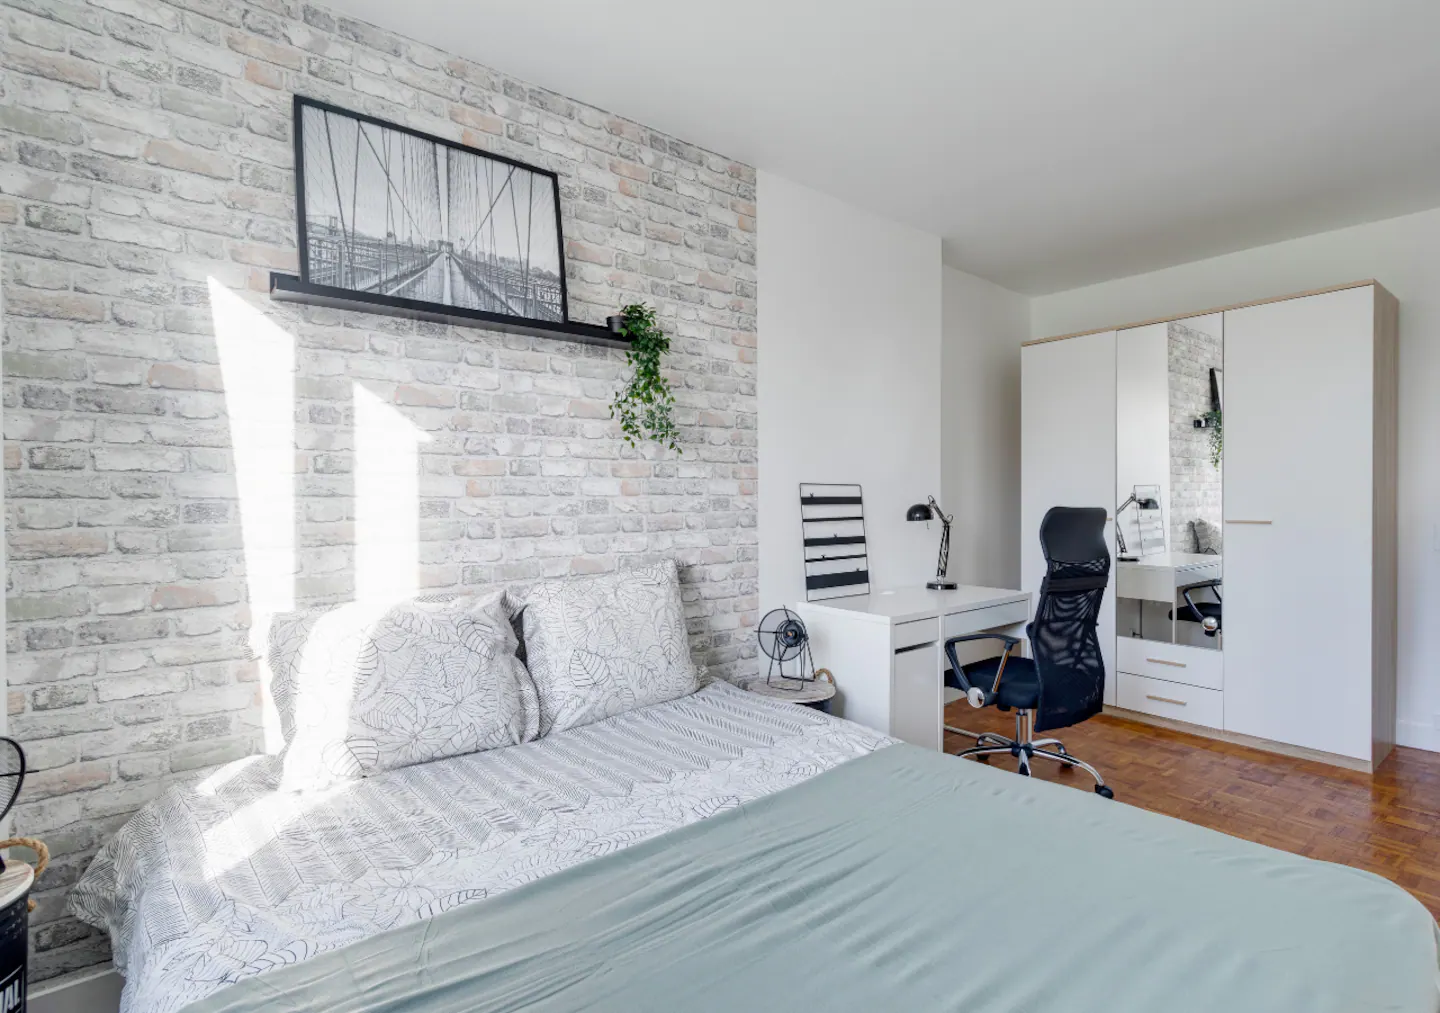 Installation de meubles dans un appartement Airbnb